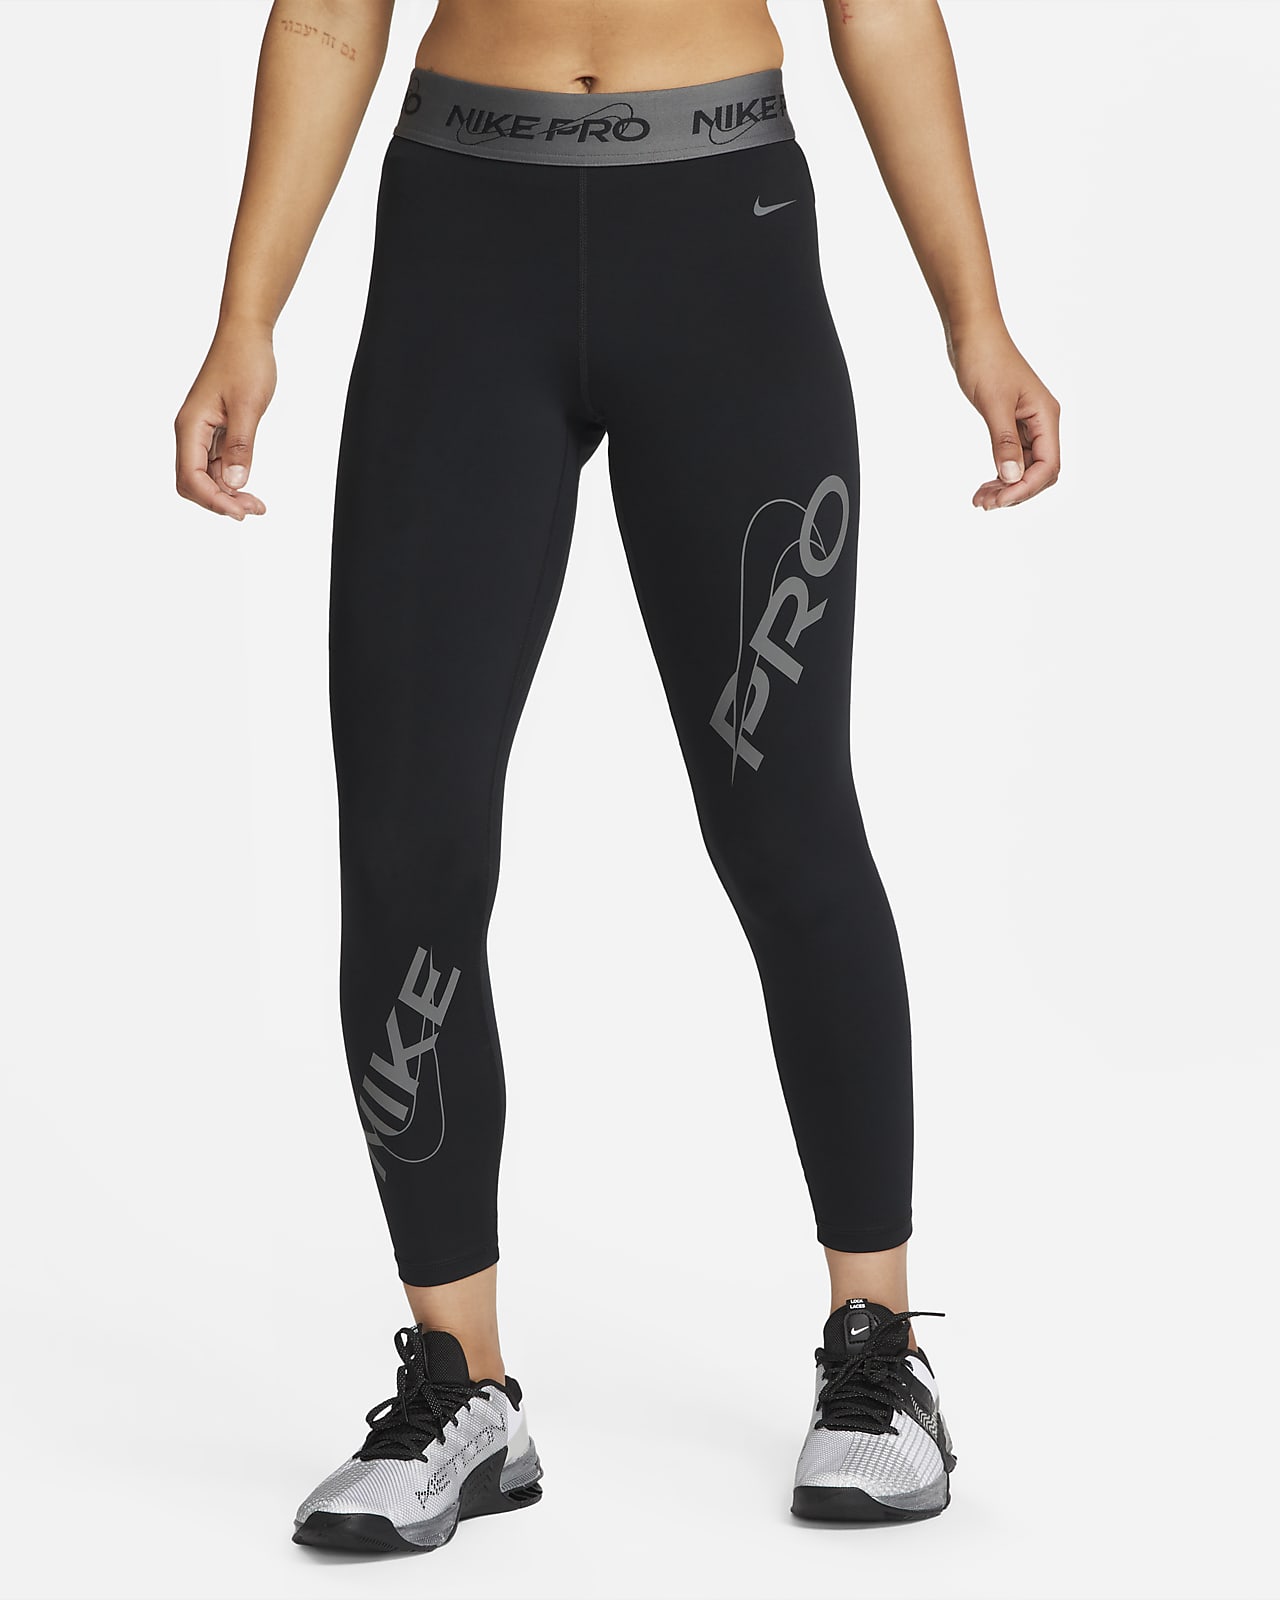 Legging 7/8 taille mi-haute à motif Nike Pro pour femme